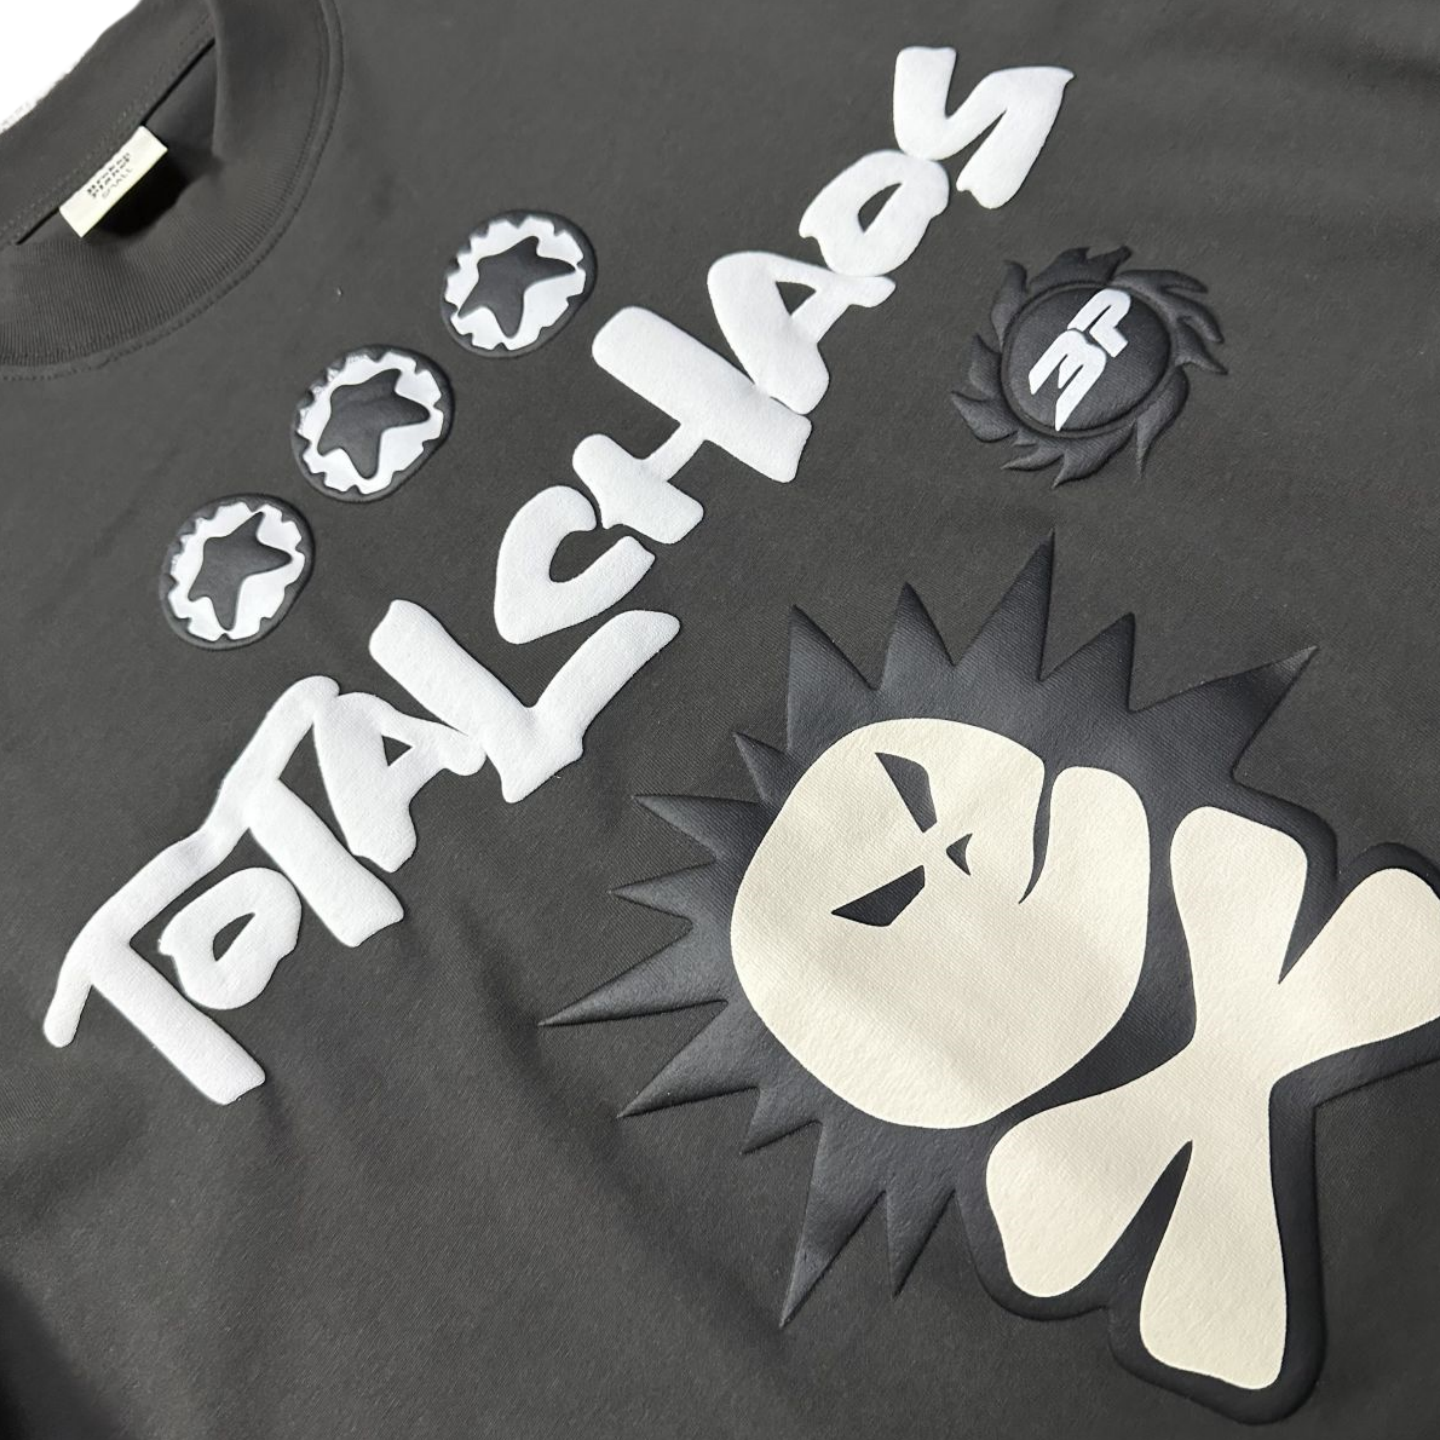 Broken Planet 'TOTAL CHAOS' Tee-shirt streetwear décontracté à manches courtes - Noir